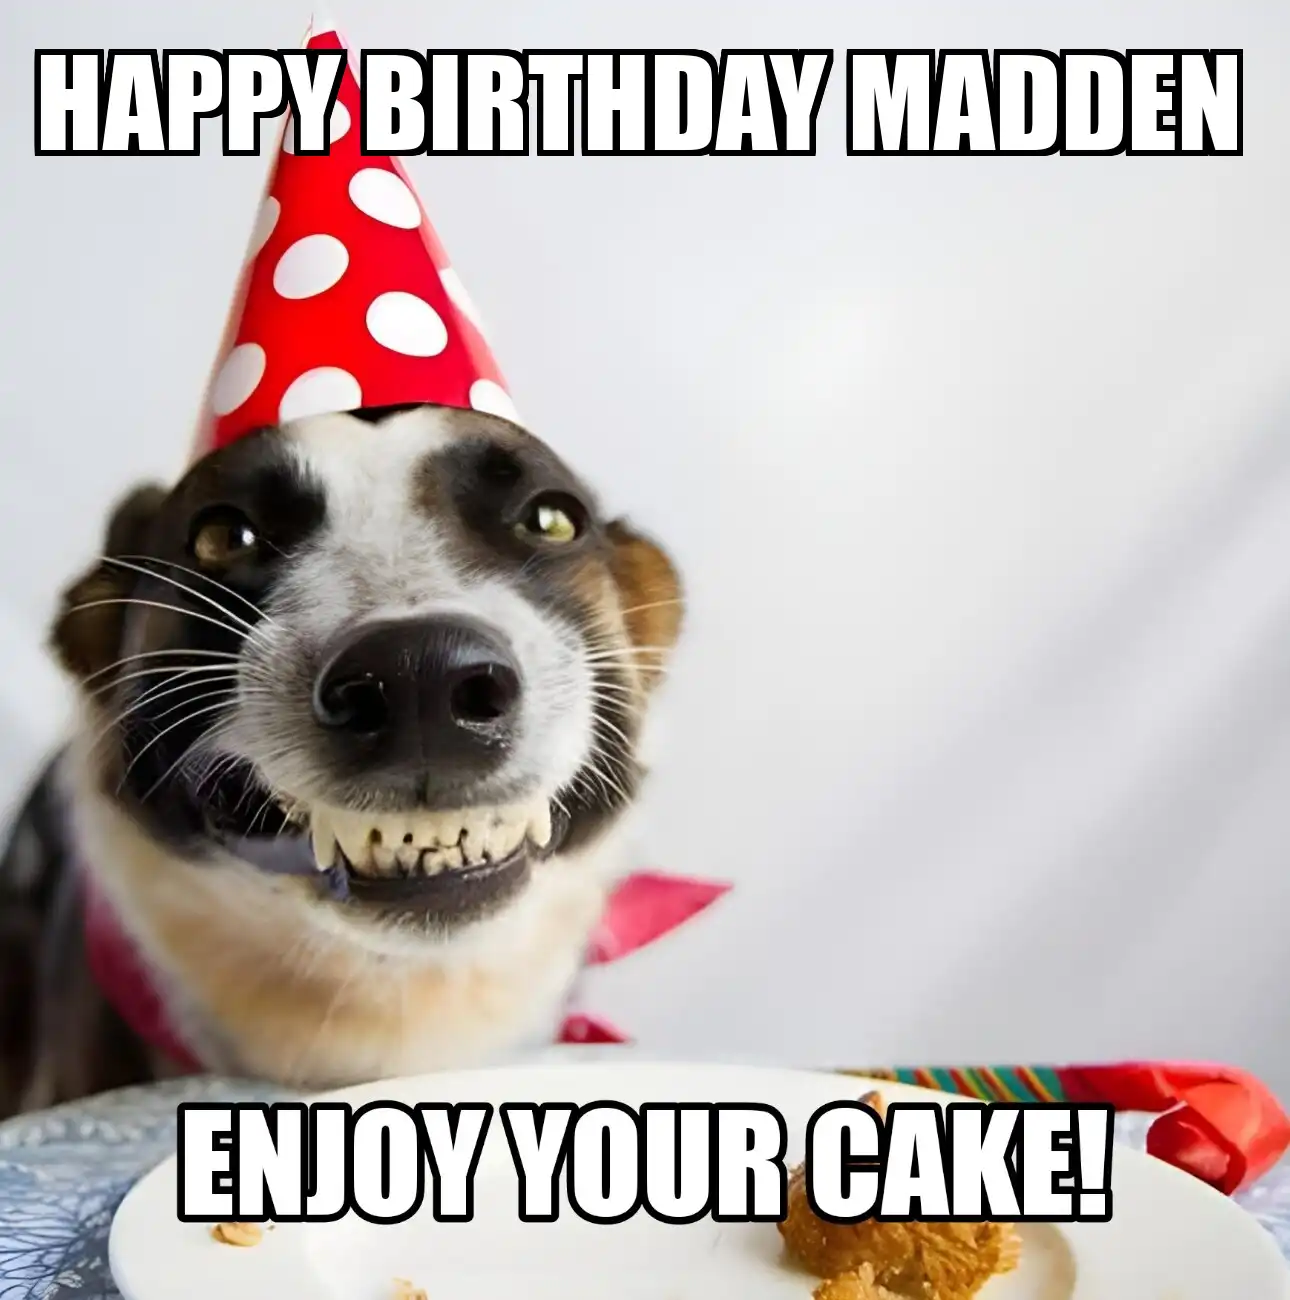 Happy Birthday Madden Enjoy Your Cake Dog Meme